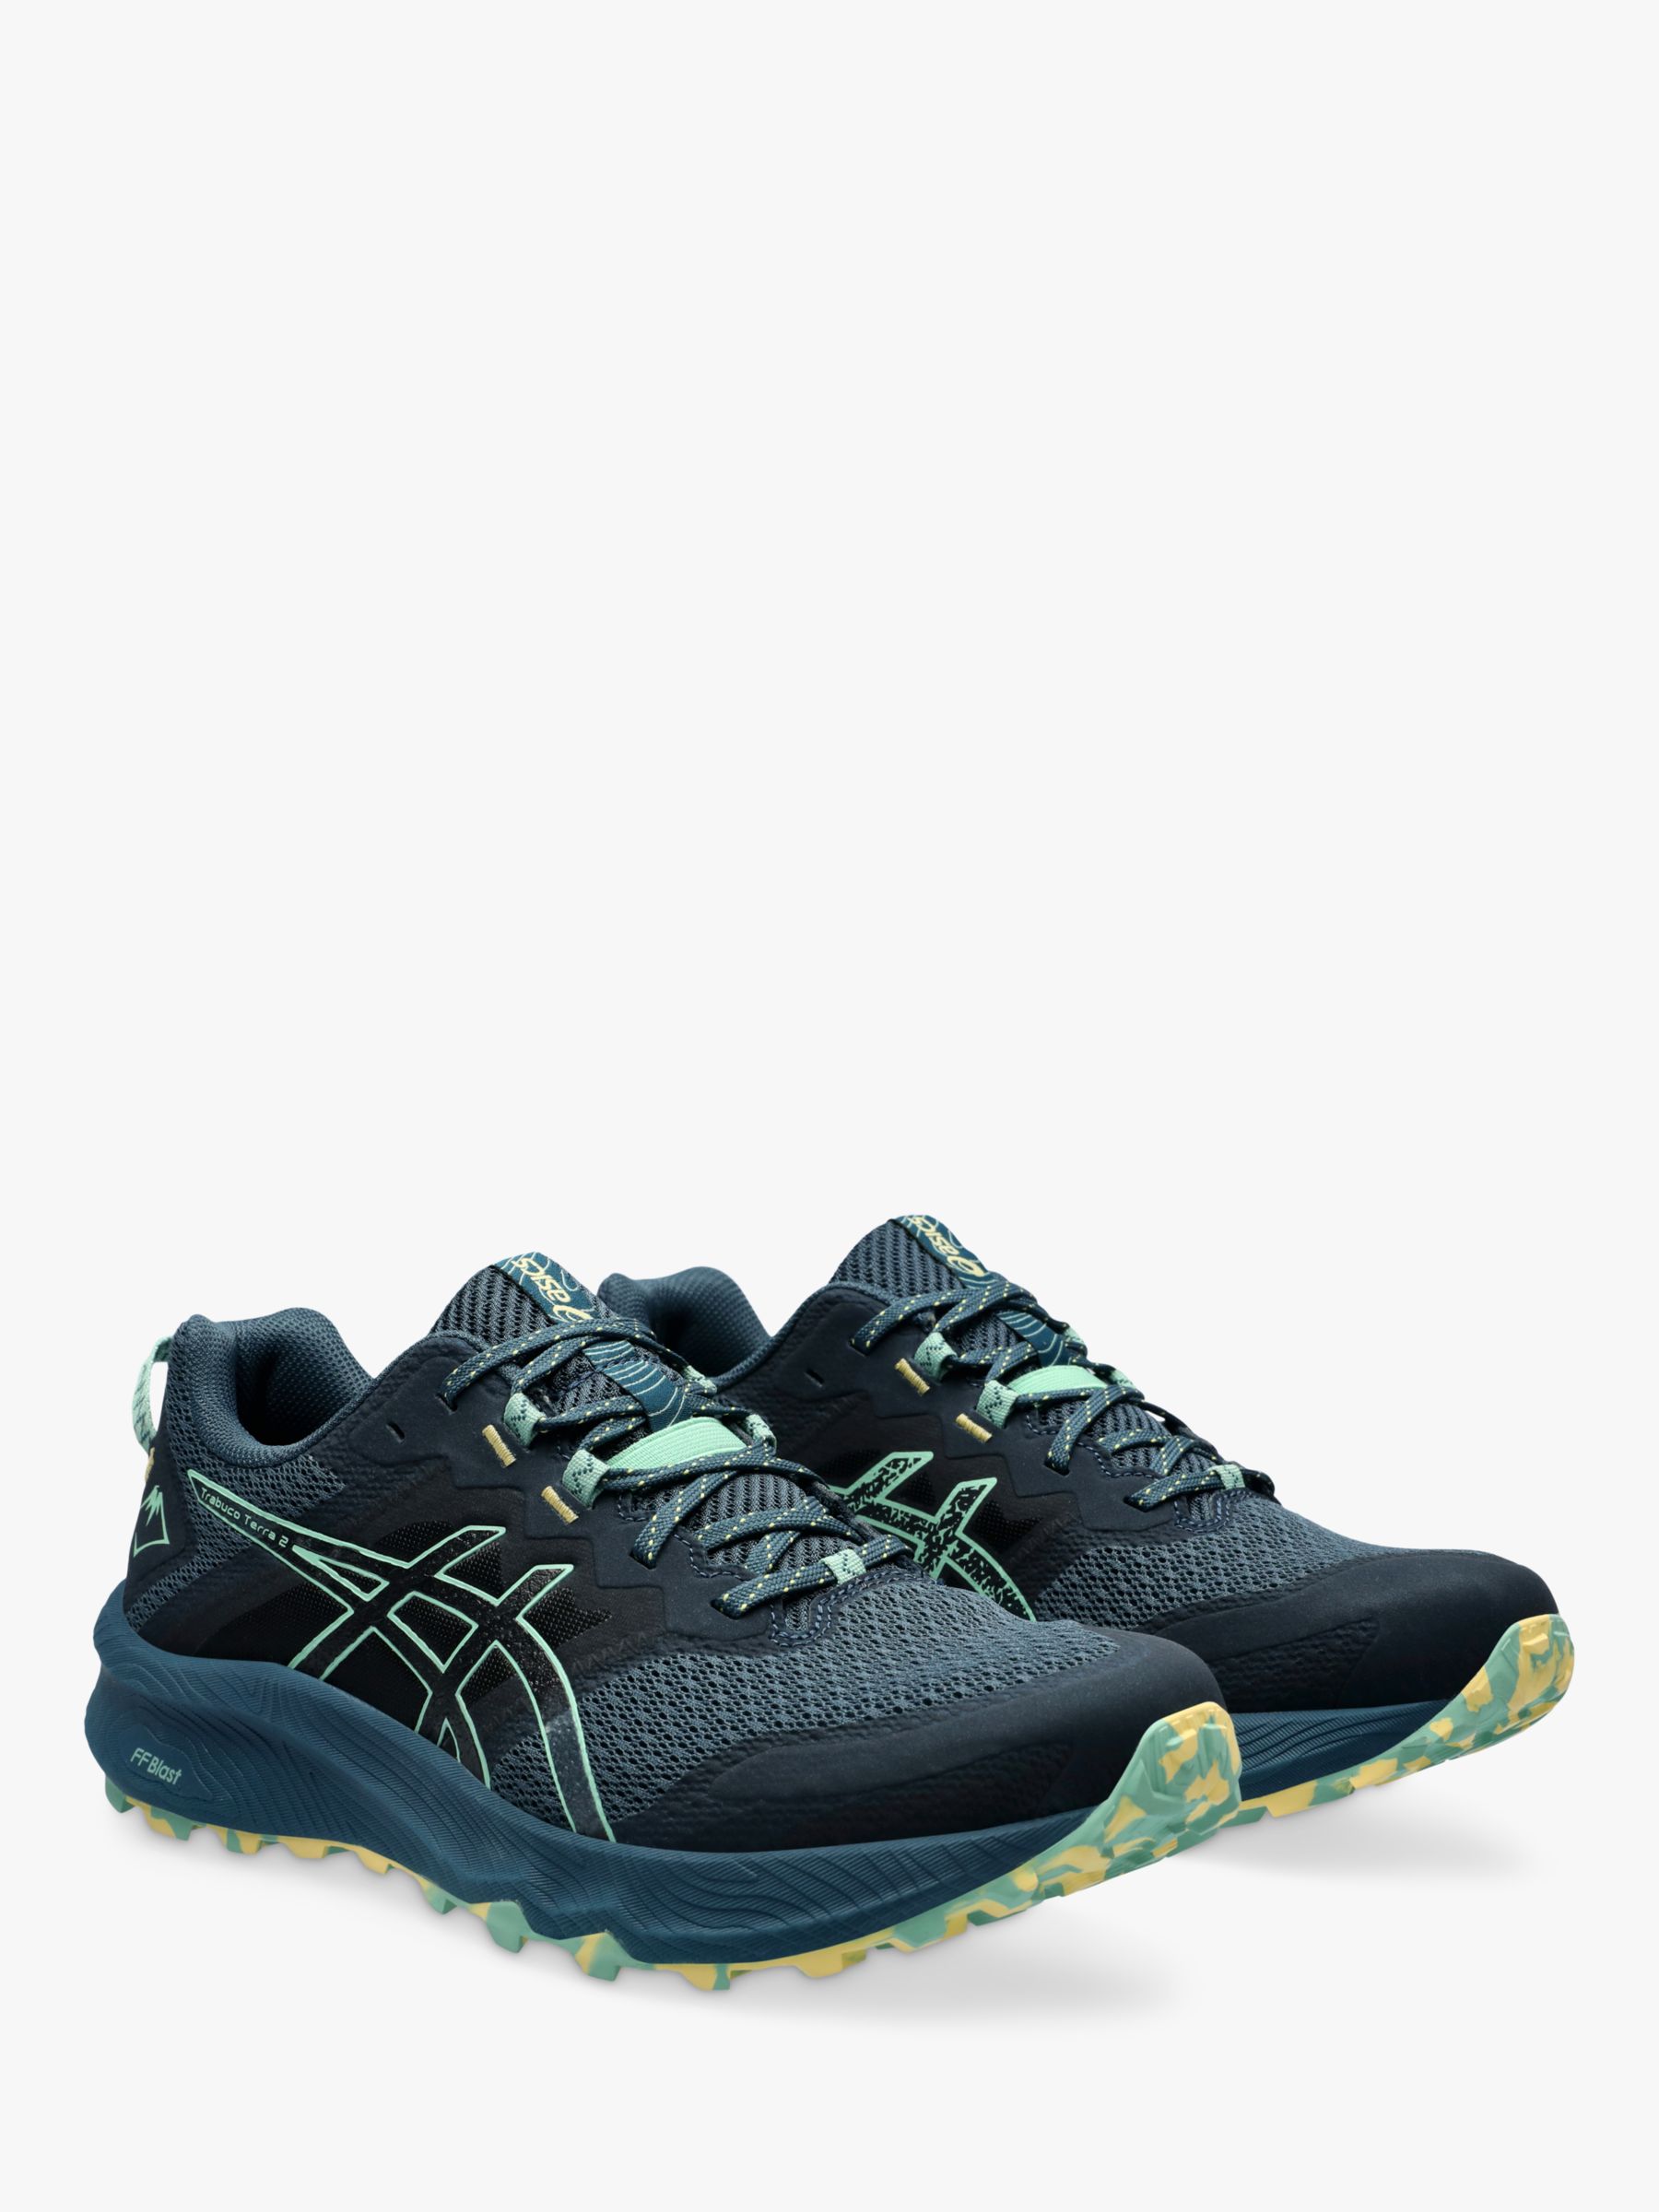 ASICS GEL-TRABUCO™ TERRA 2 Men's Running Shoes, Blue/Dark Mint, 8